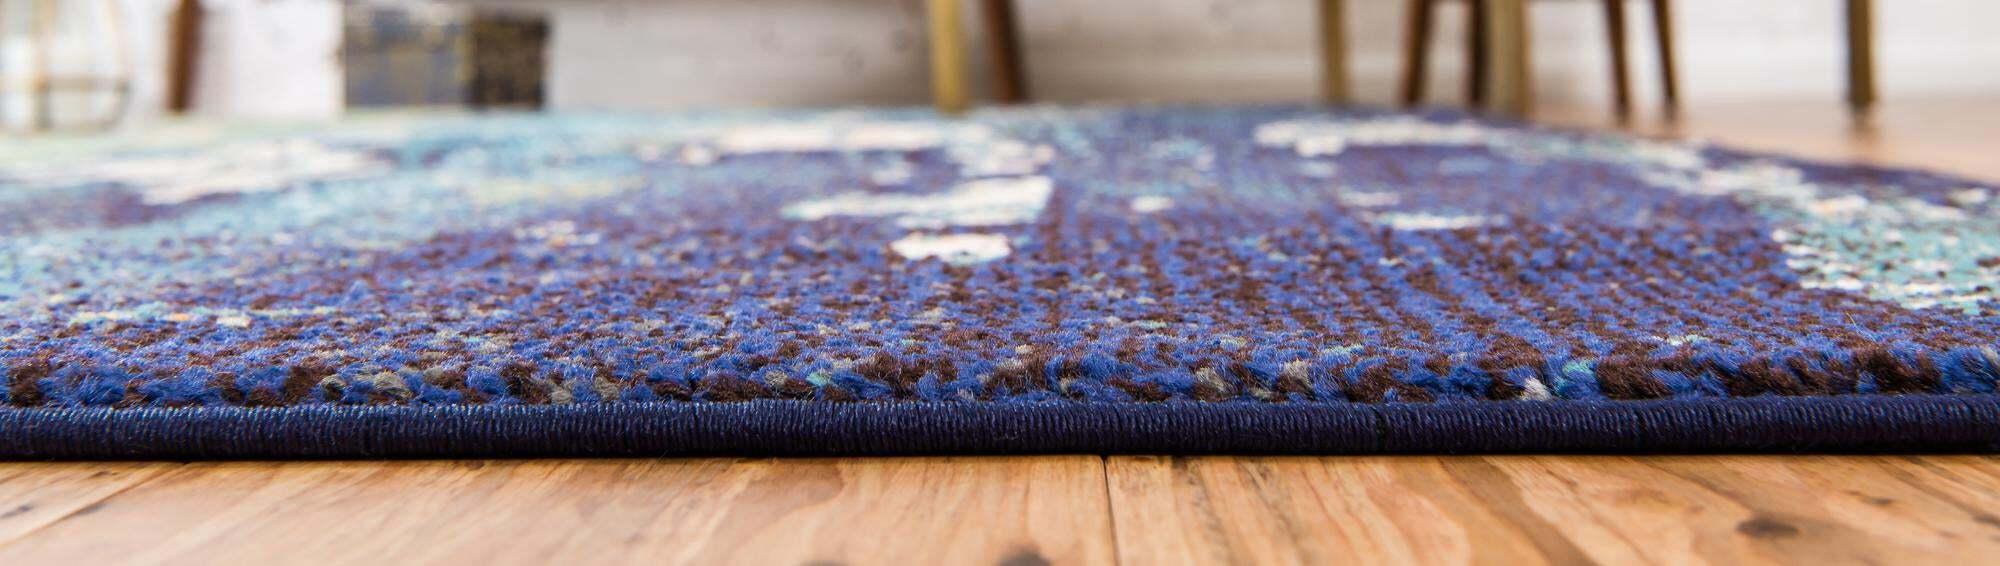 Unique Loom Indoor Rugs - Estrella Abstract 3x5 Rug Navy Blue & Multicolor